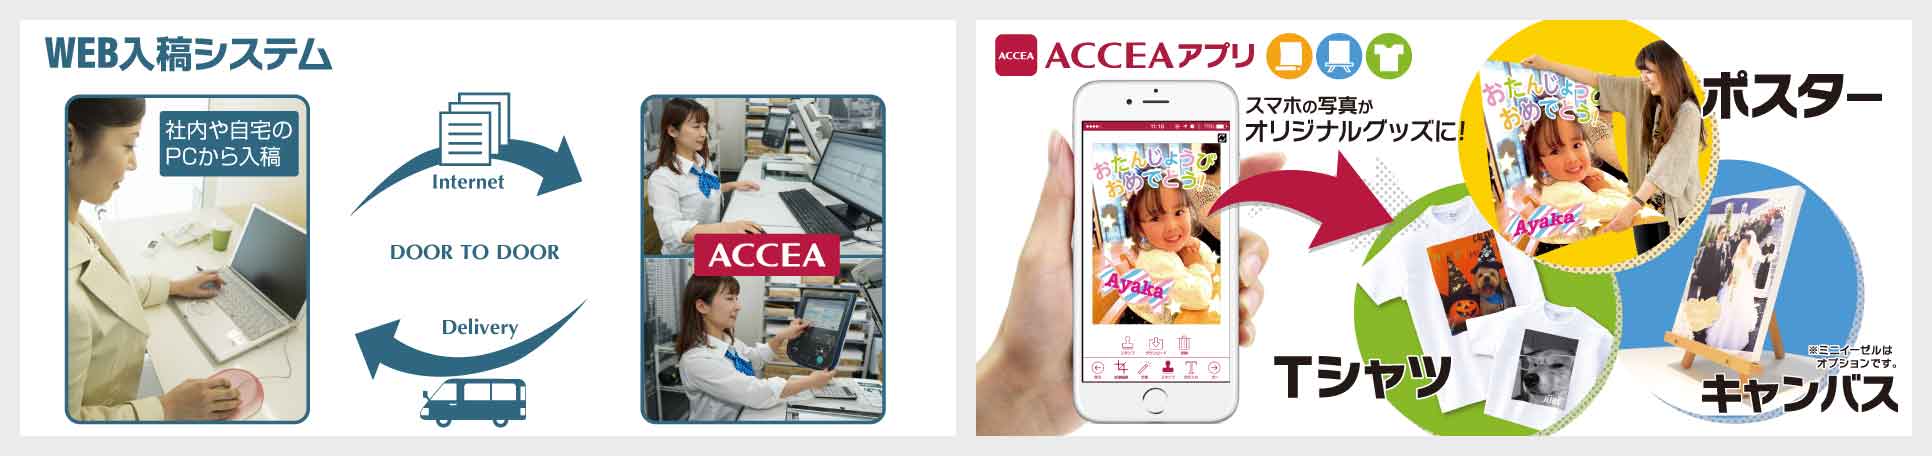 WEB入稿システム ACCEAアプリ